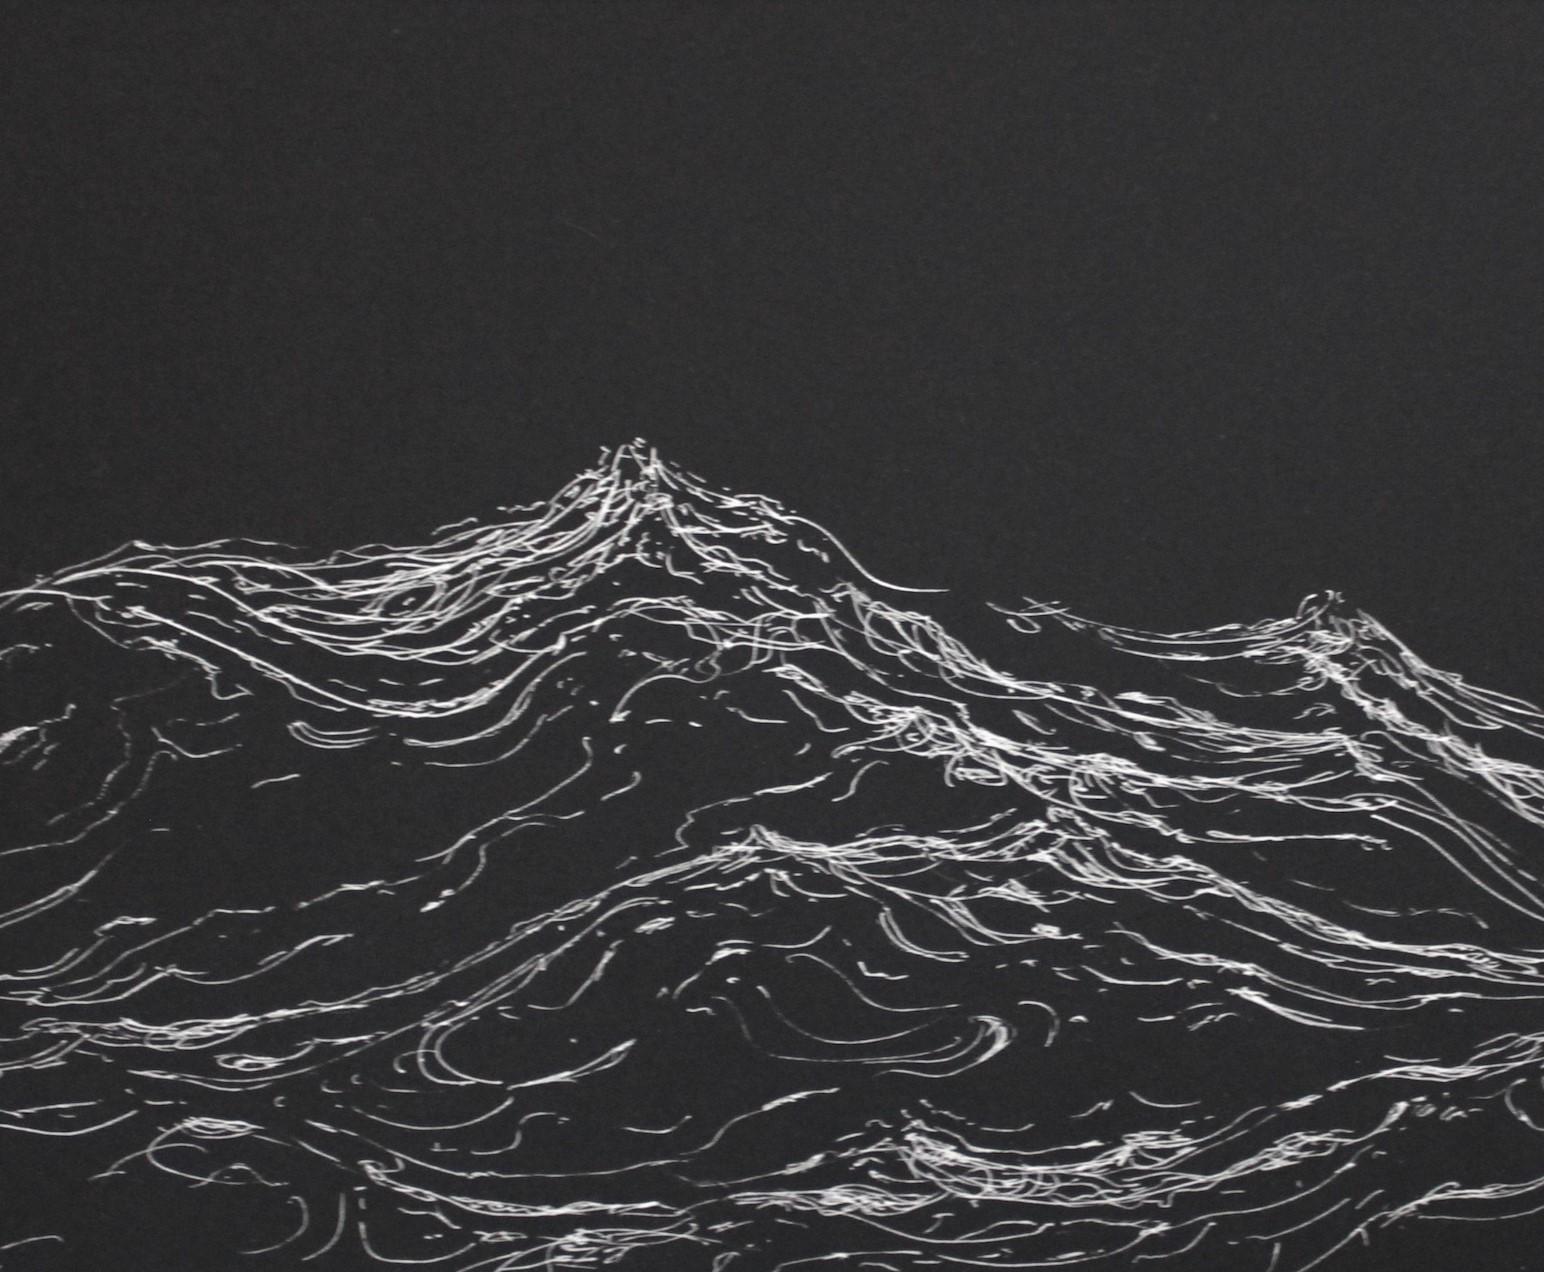 Exterme currents by Franco Salas Borquez - Seascape, ocean, waves, black For Sale 4